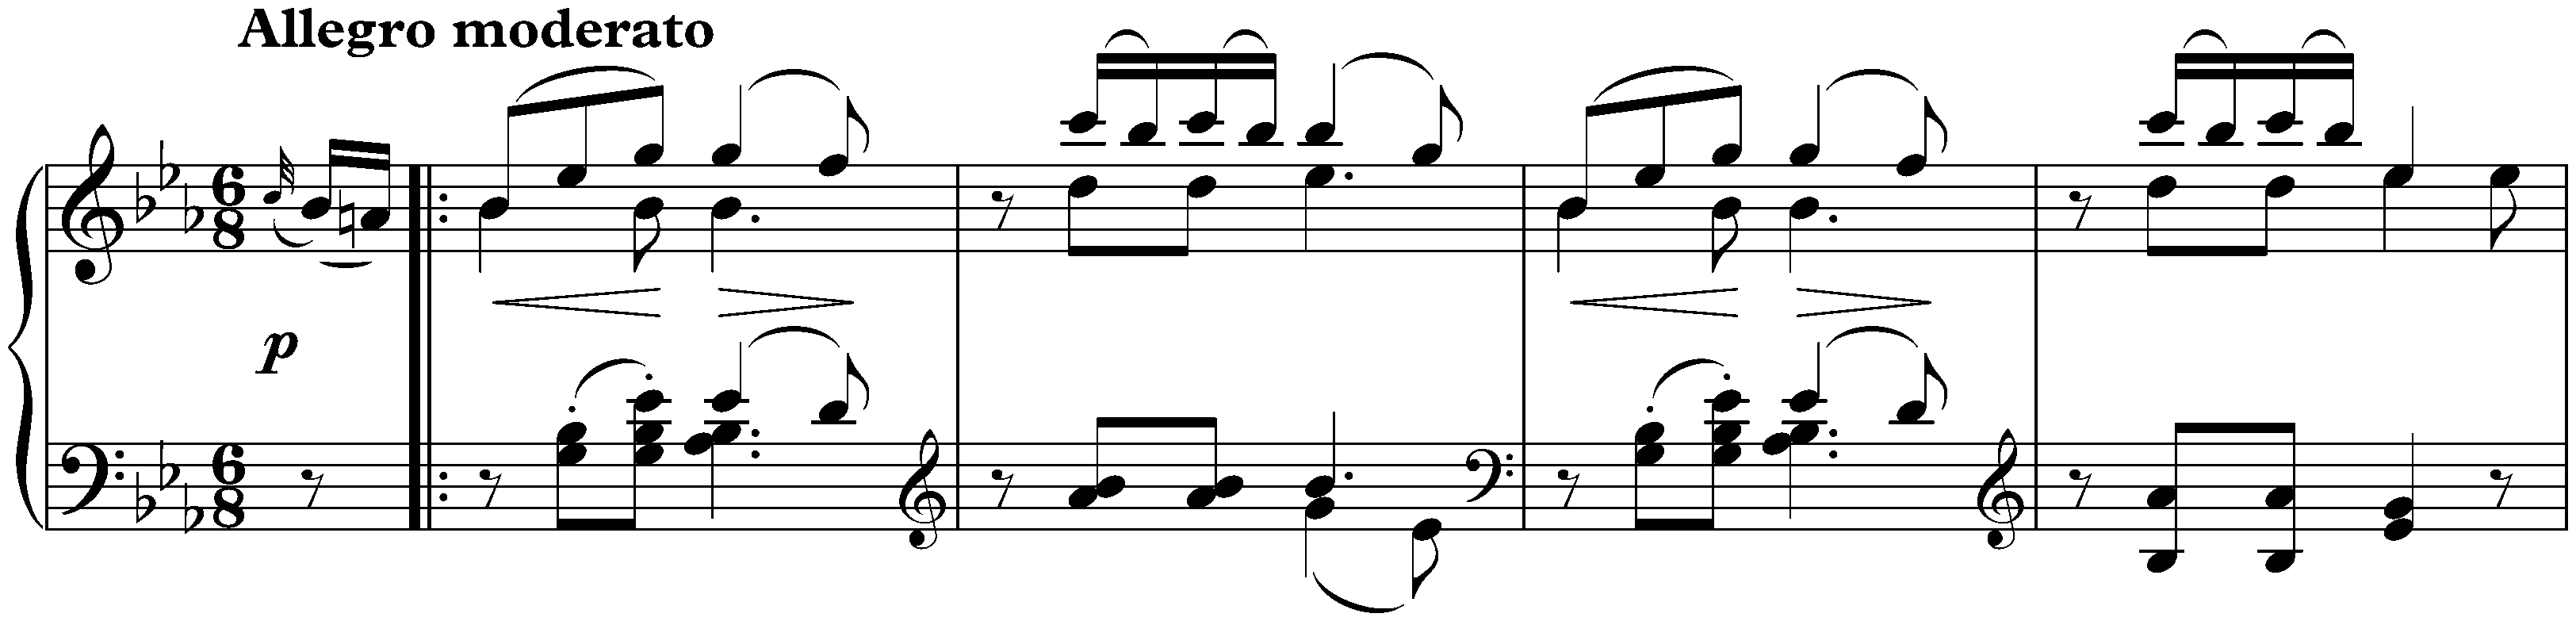 Sonata in E-flat major, D 568; 4. Allegro moderato